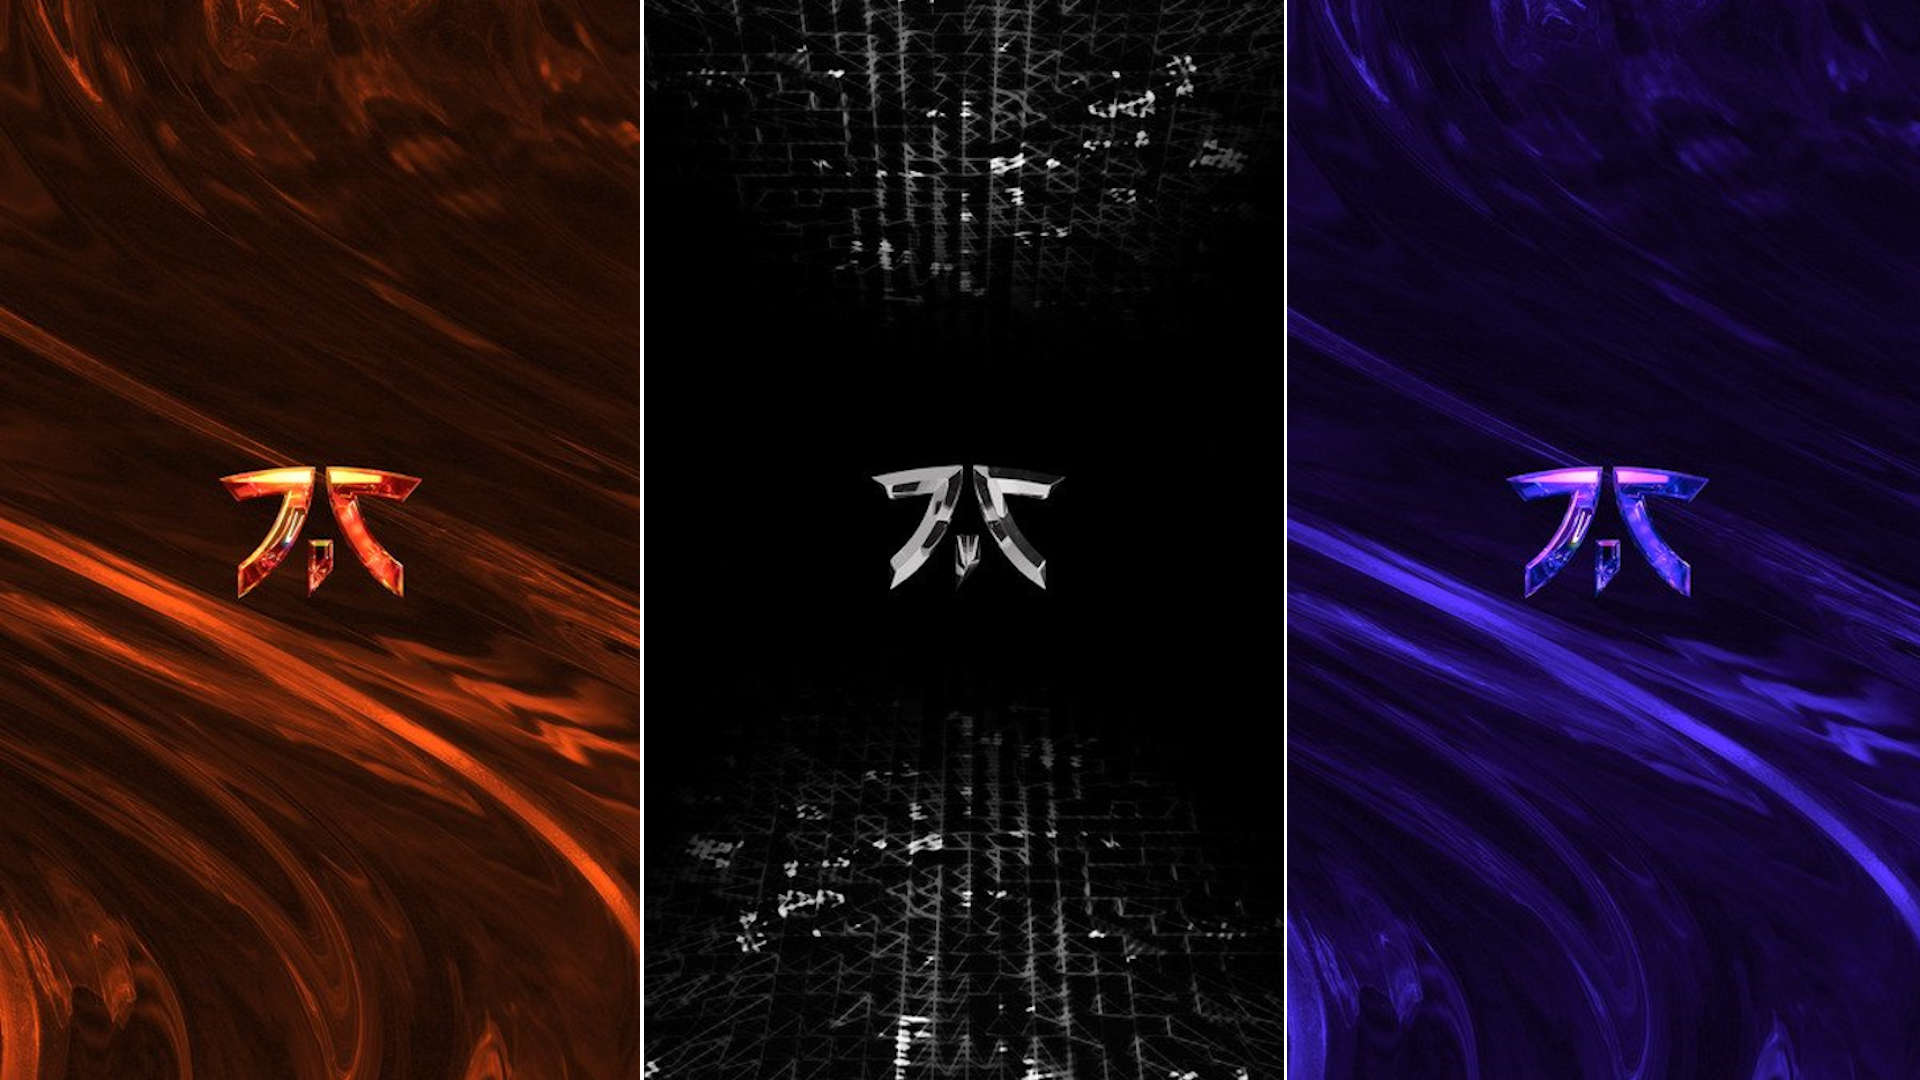  Besondere Hintergrundbild 1920x1080. OnePlus Veröffentlicht 3 Neue Hintergrundbilder Im Fnatic Modus